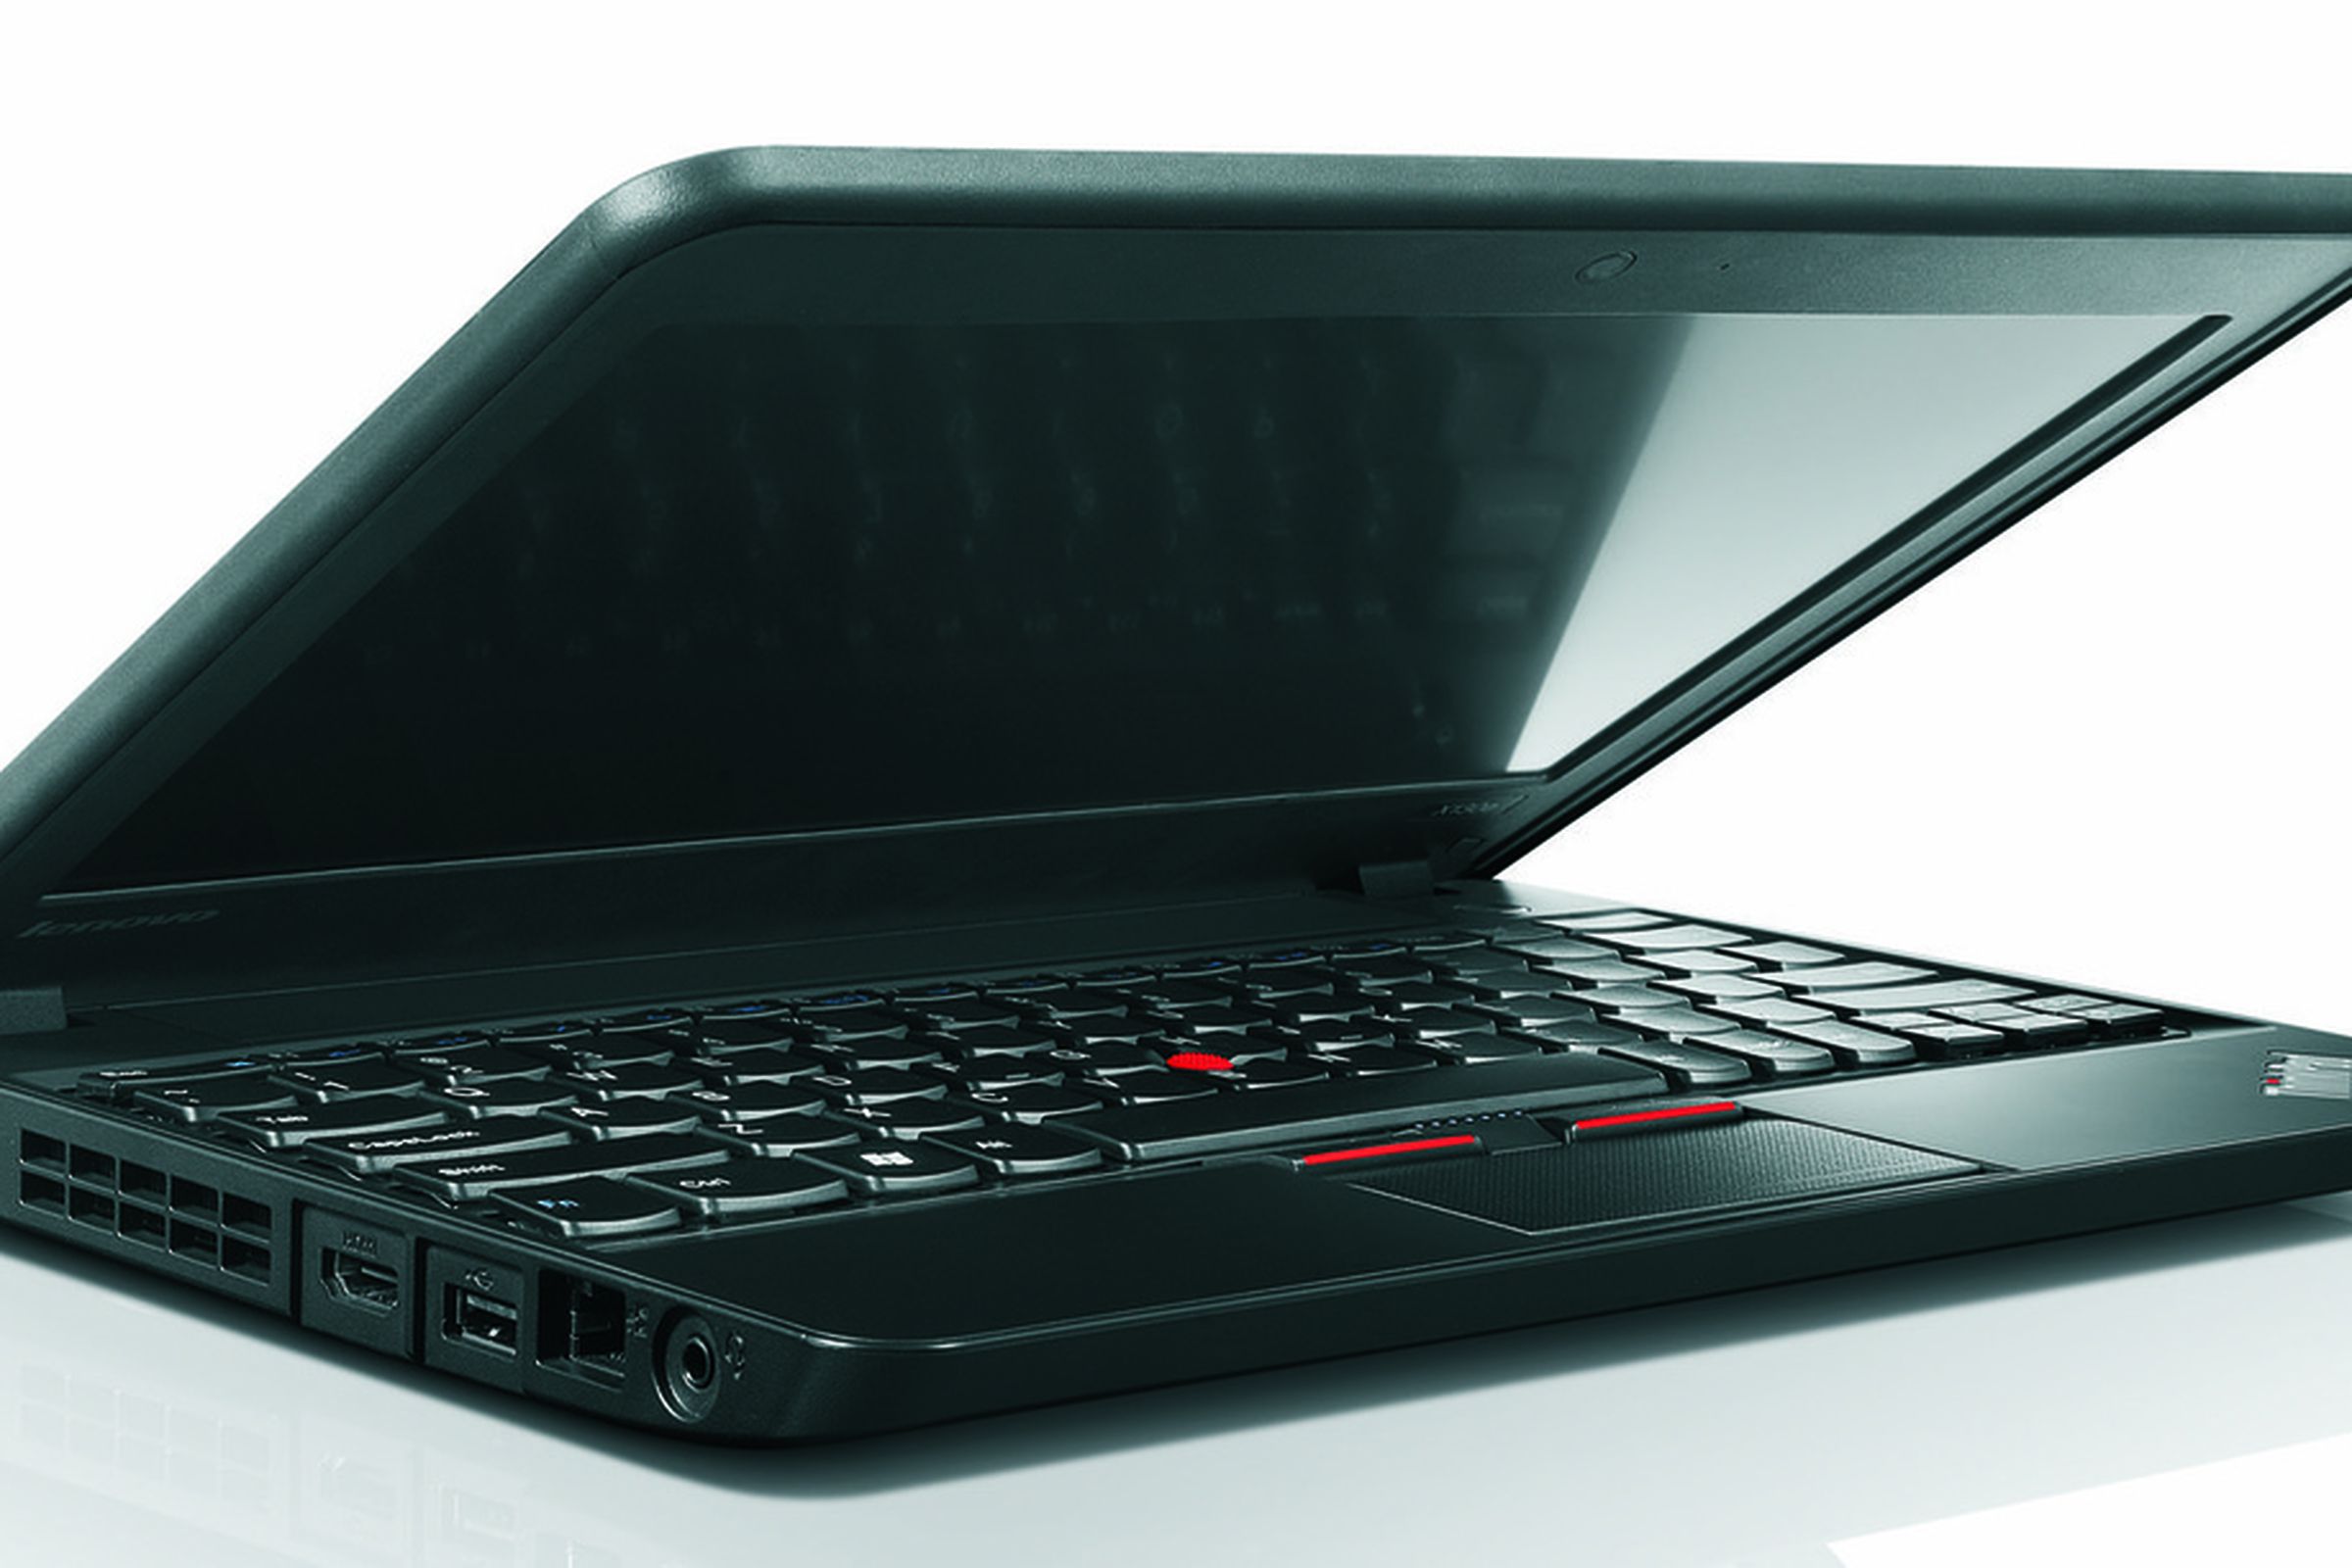 Lenovo ThinkPad X130e Press